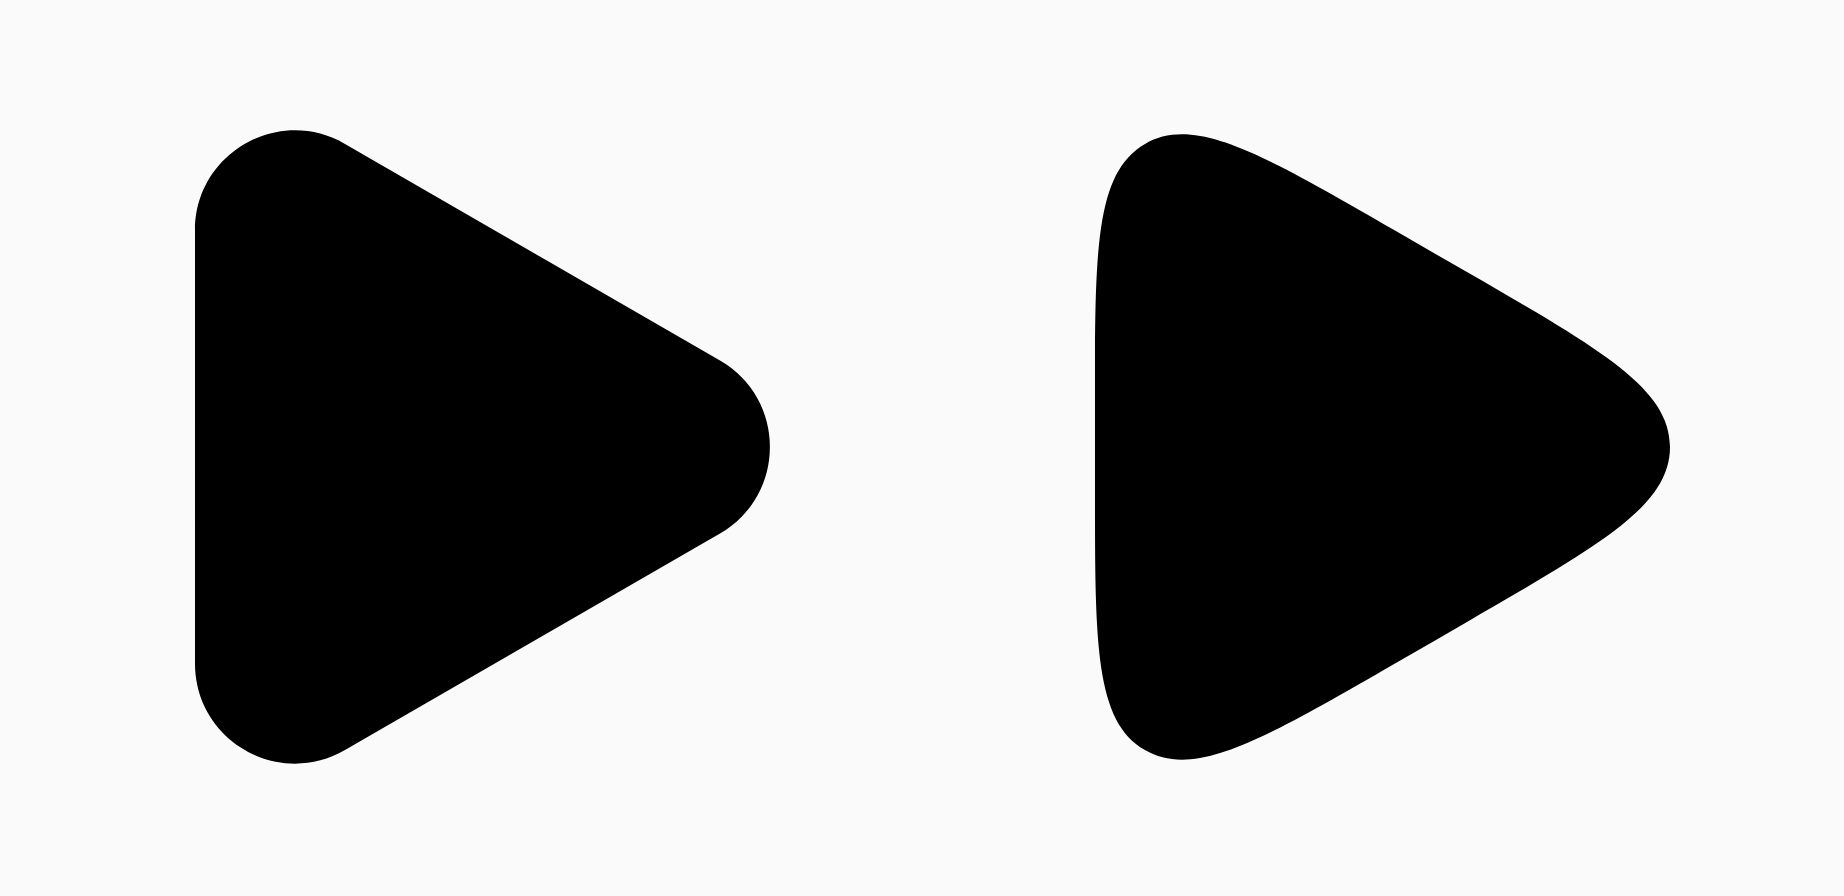 两个黑色三角形，显示了平滑参数的差异。